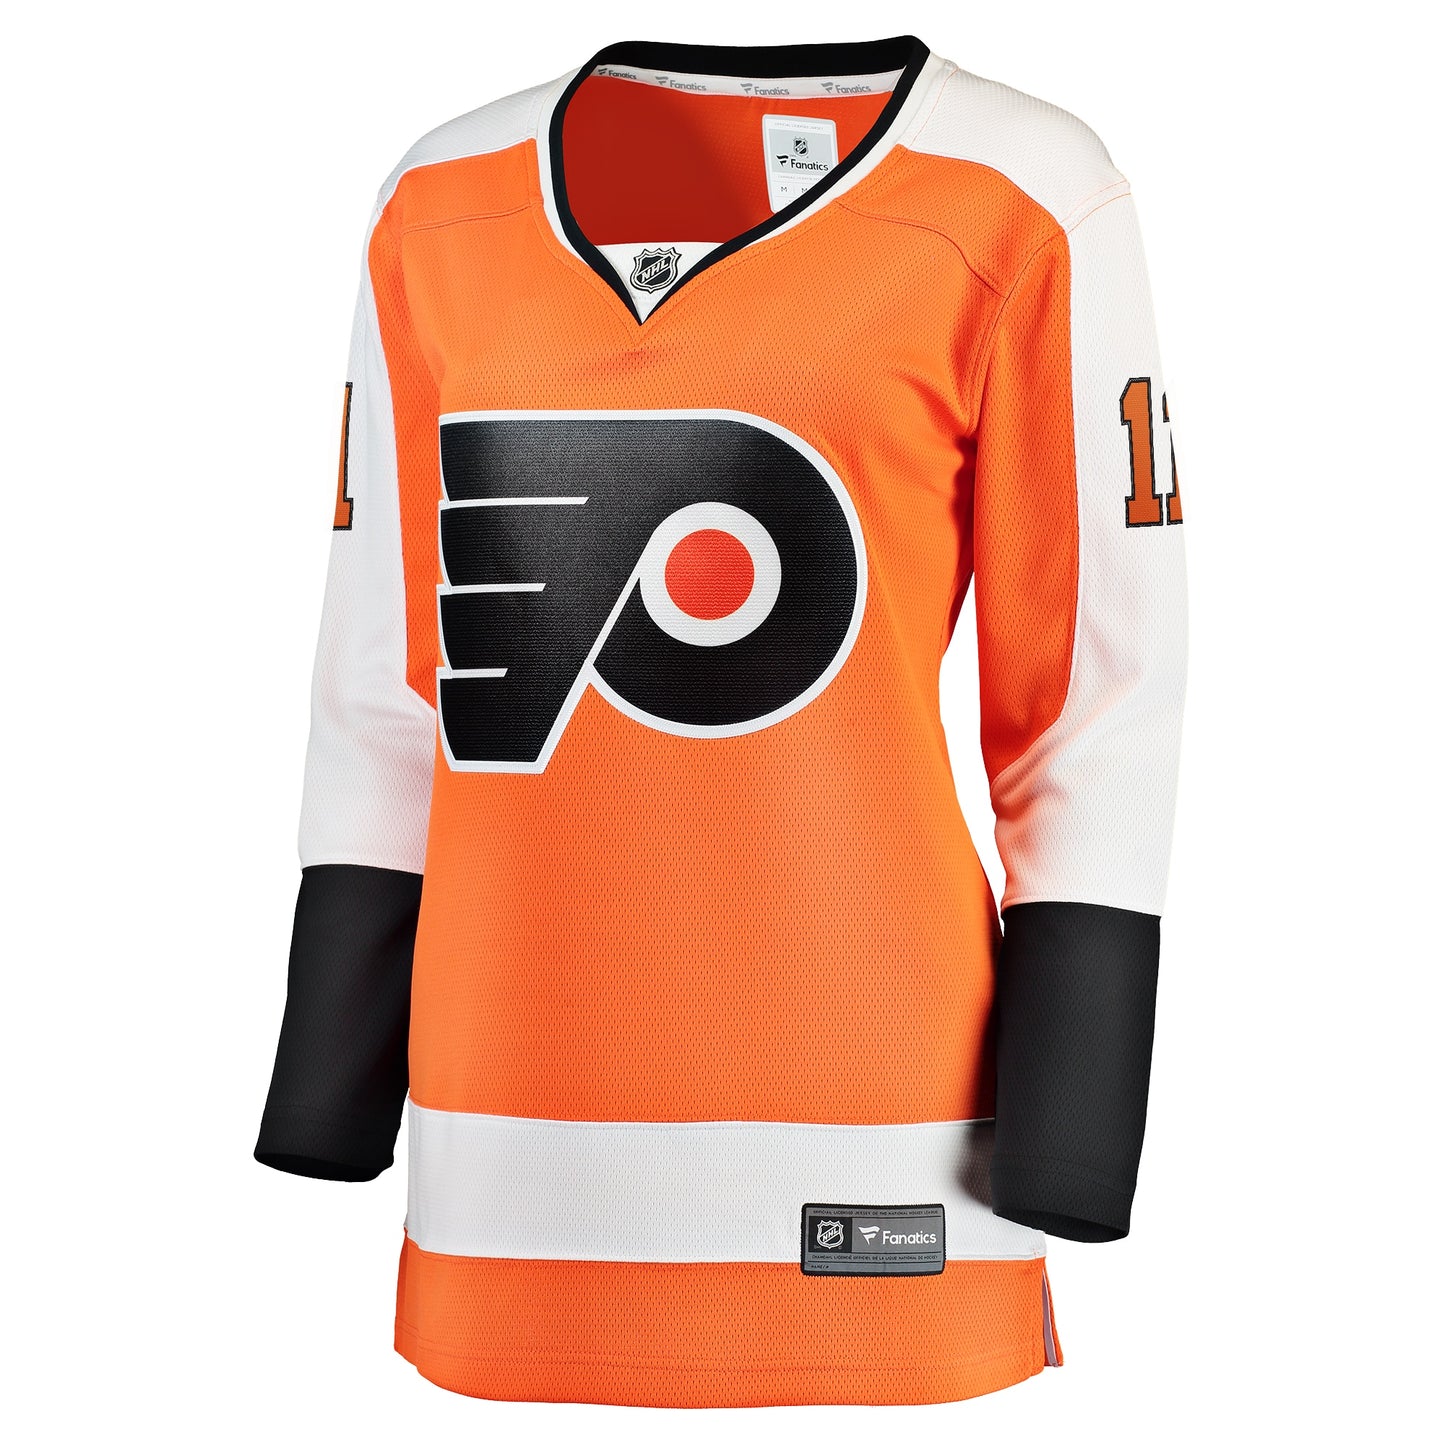 Travis Konecny Philadelphia Flyers Fanatics Branded Women's Home Premier Breakaway Player Jersey - Orange